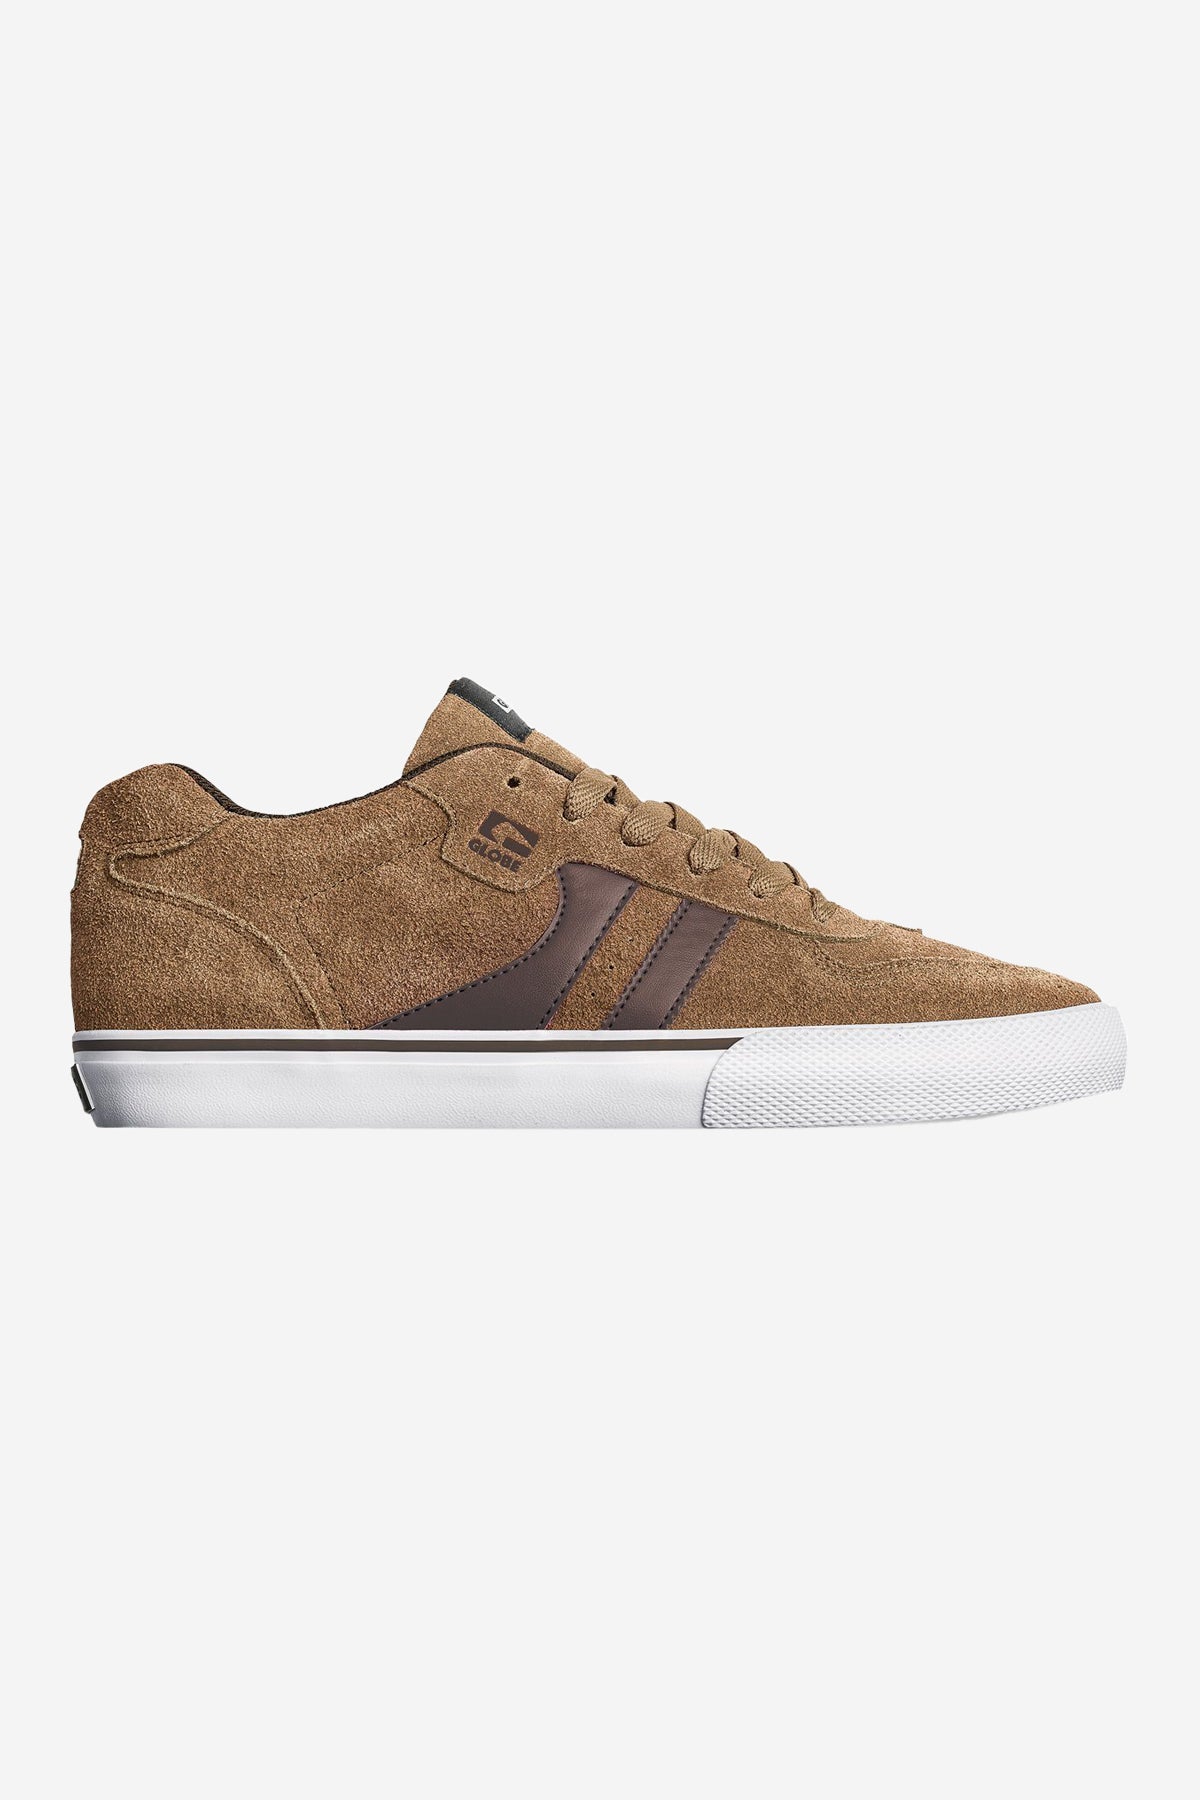 encore-2 tan brown skateboard shoes